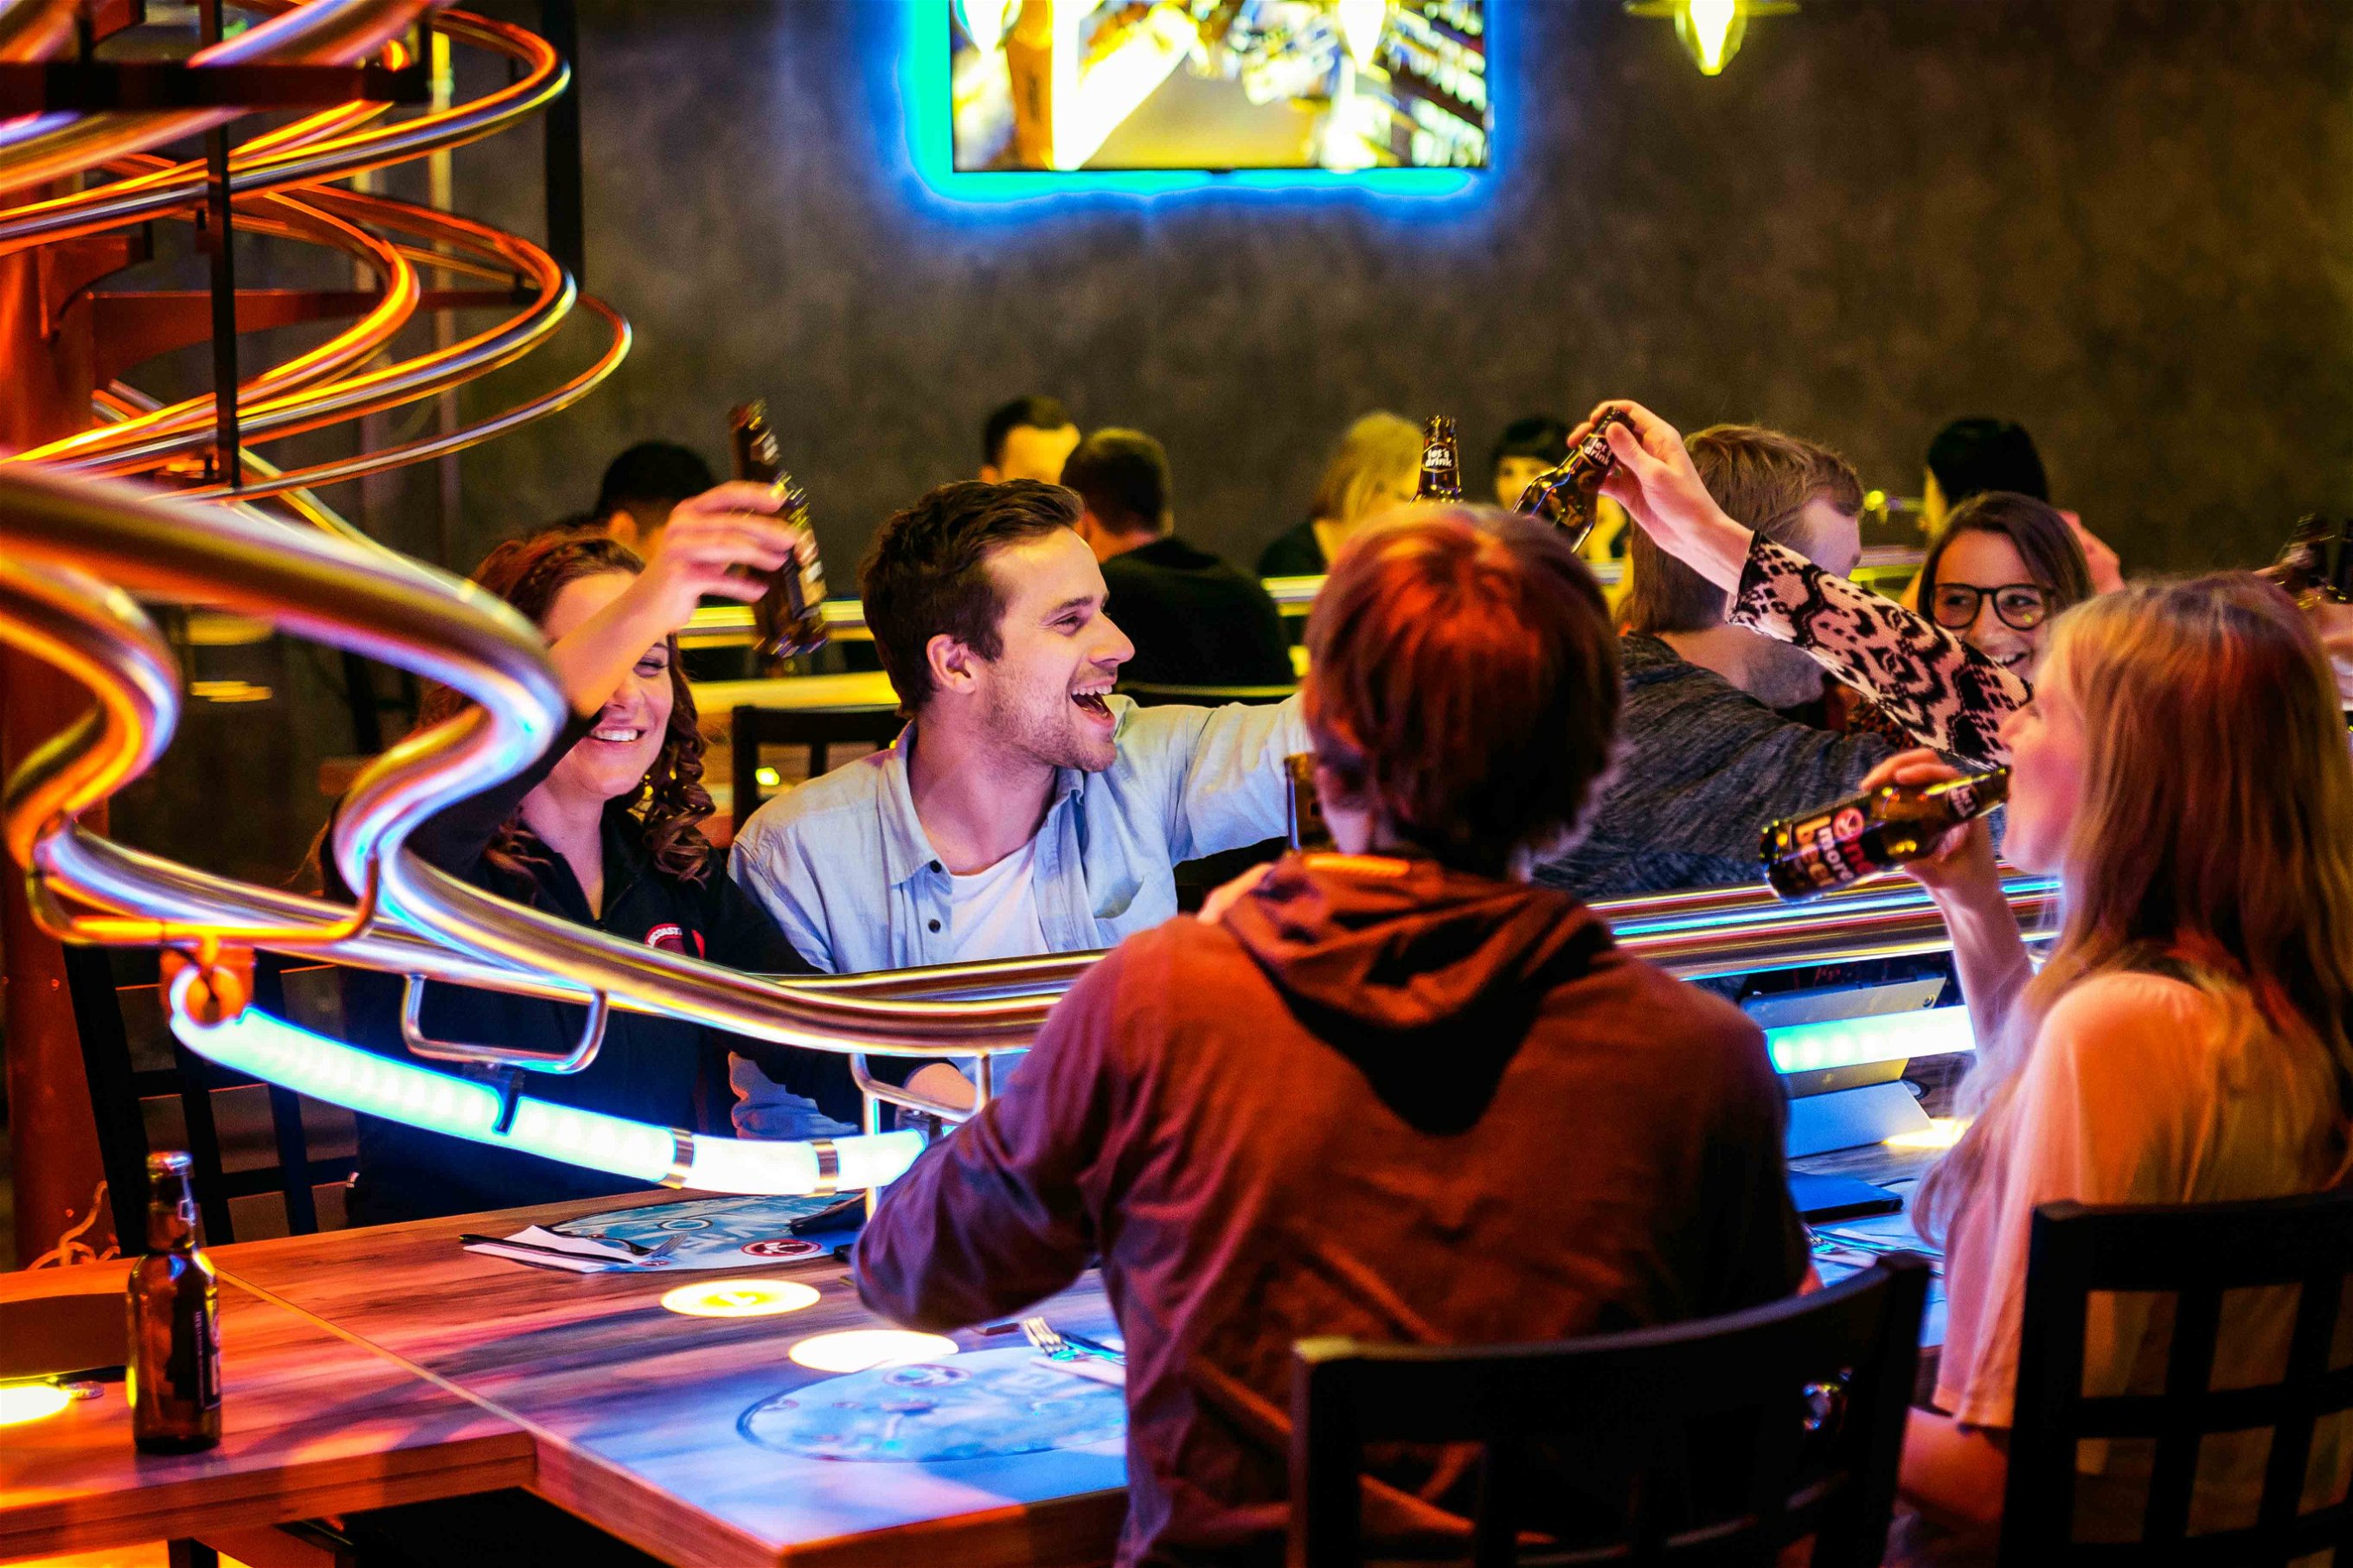 Spielerisch innovativ zeigt sich das Rollercoaster System im Wiener Prater.